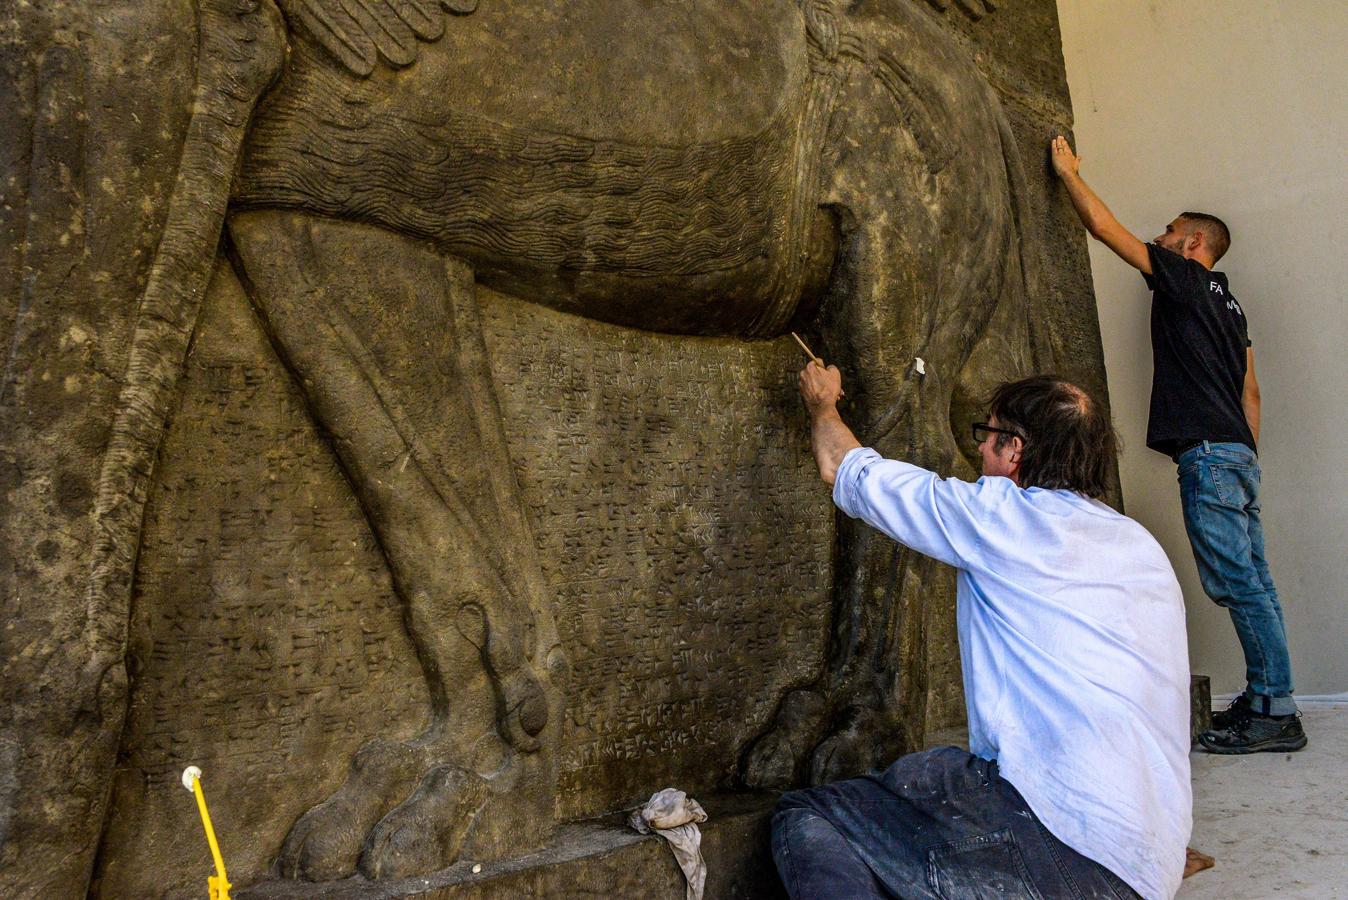 Los leones alados con cara de hombre y cinco piernas (Lamassu) adornaban la sala del trono del rey asirio Asurnasirpal II (883-859 AC) en su palacio de Nimrod. Tras la caída del imperio asirio, los Lamassu permanecieron enterrados más de 2.000 años, hasta que, en 1847 fueron descubiertos por el arqueólogo Austen Henry Layard (1817-1894).